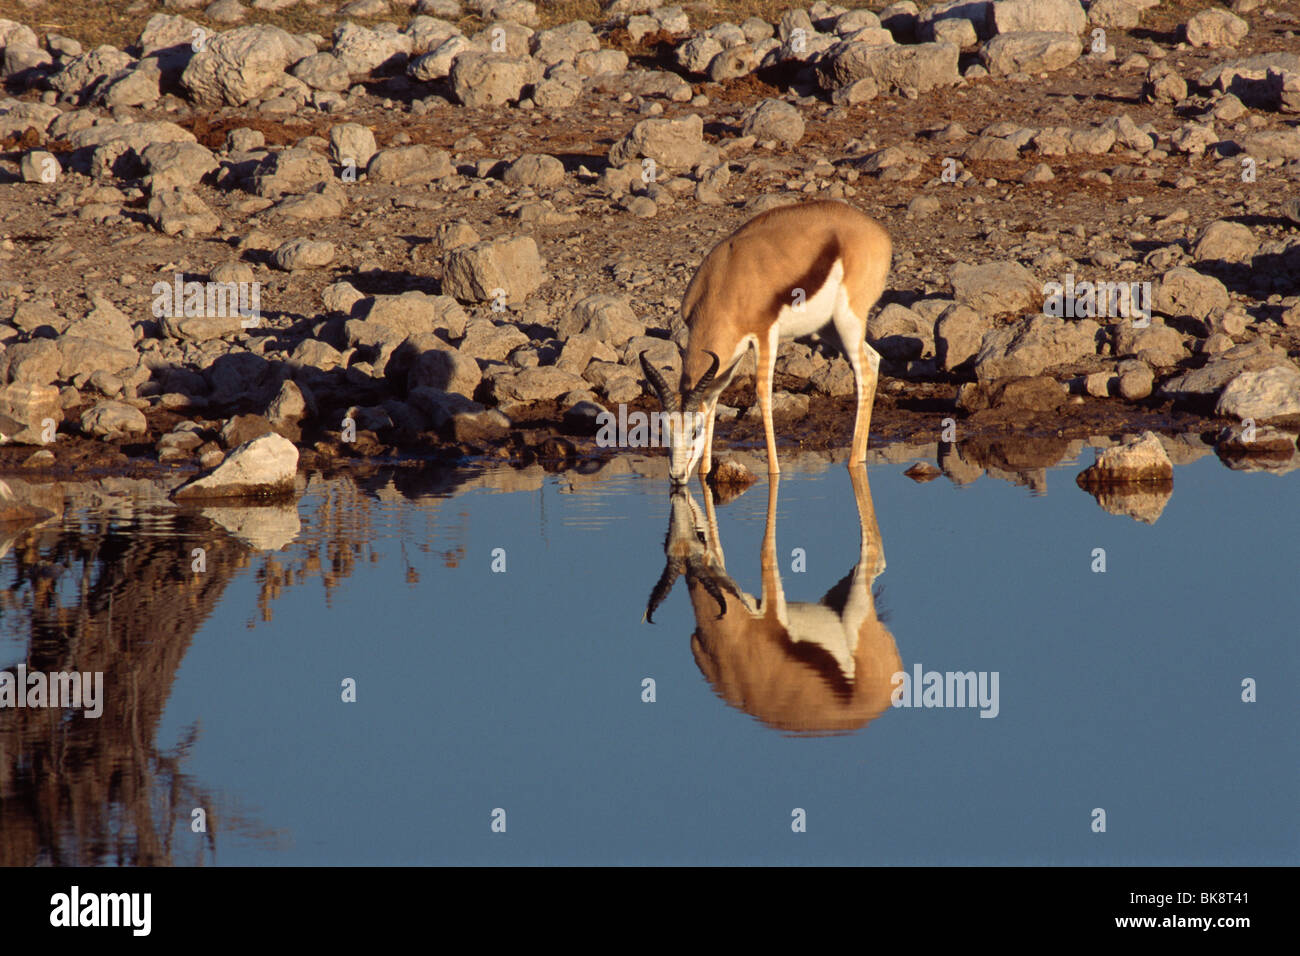 Impala (Aepyceros melampus), drinking from a waterhole, Etosha National Park, Namibia, Africa Stock Photo